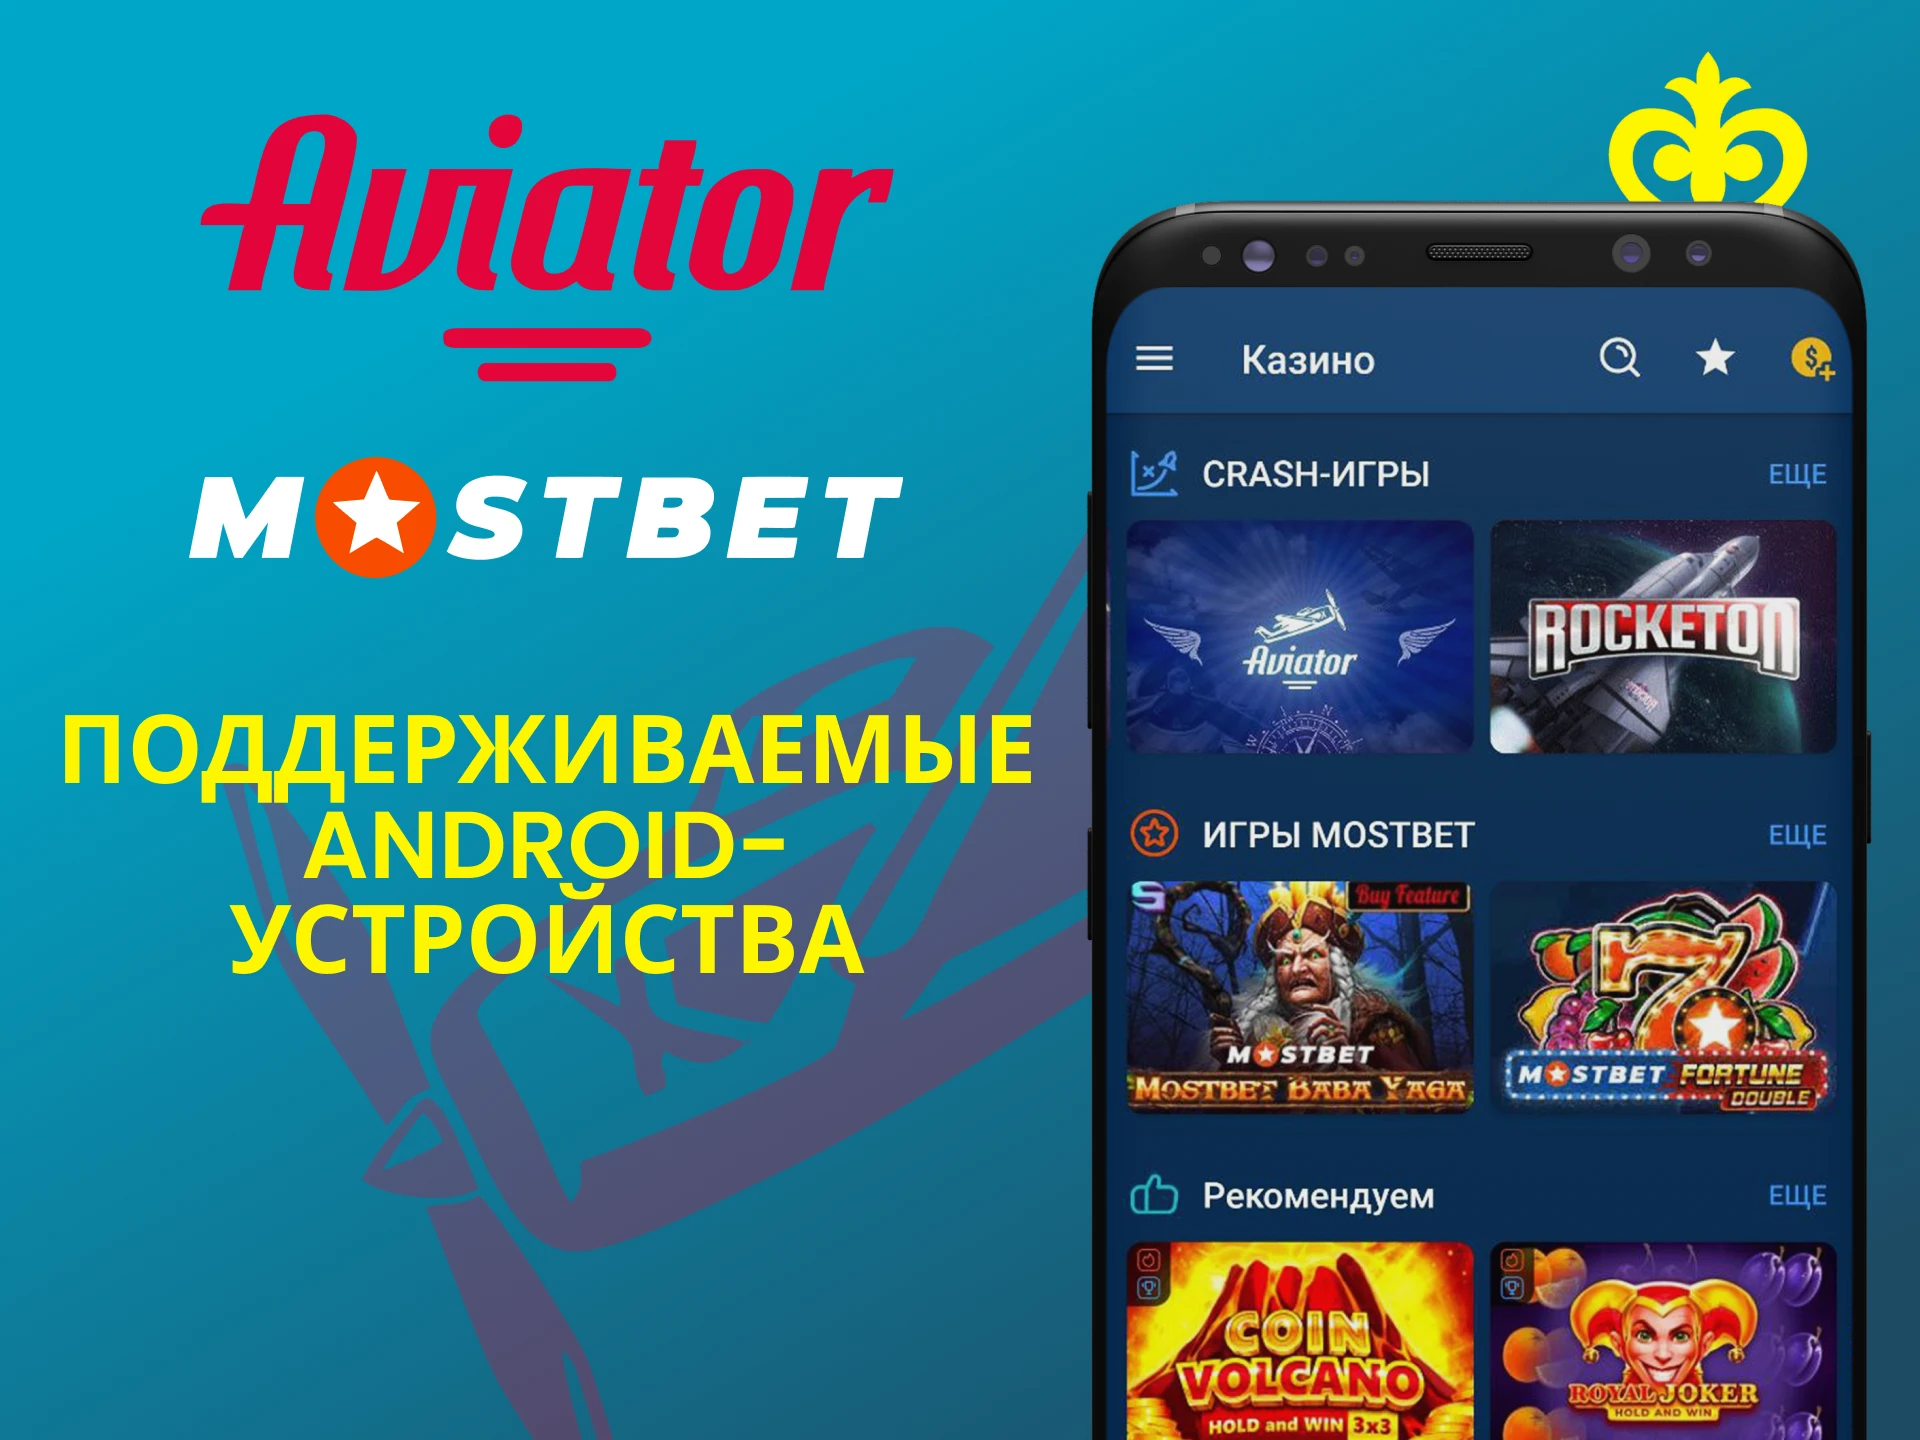 Играй в Авиатор через приложение Mostbet для Android.